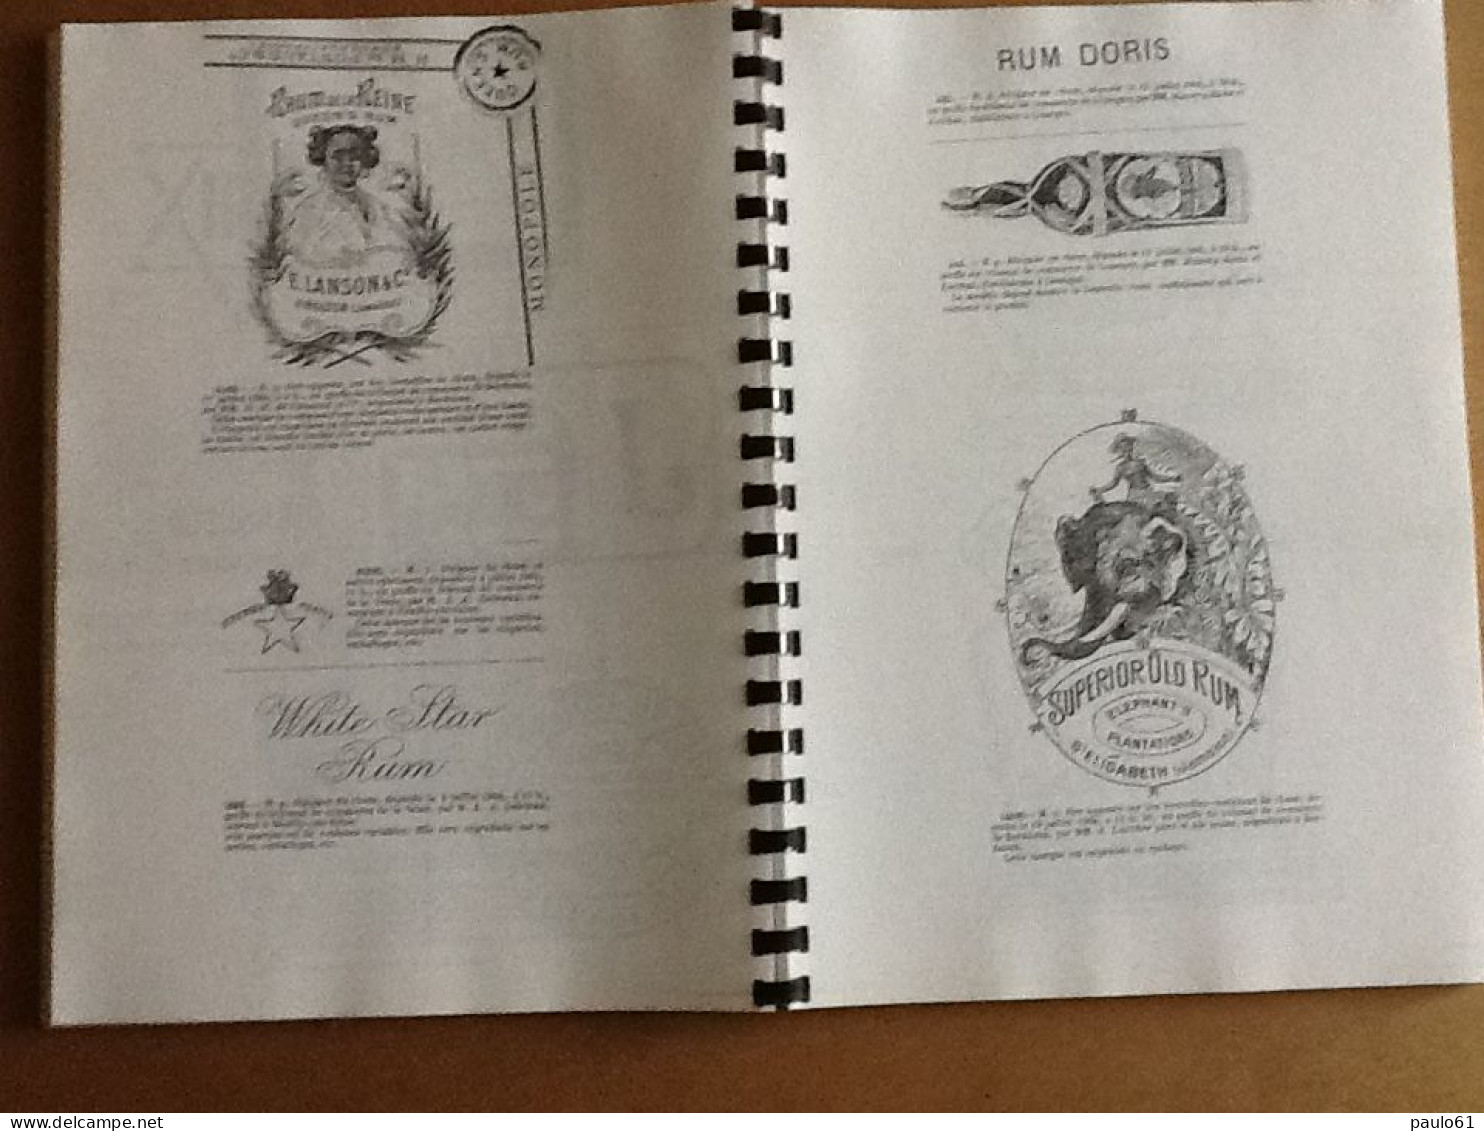 Repertoire Fascicule N°3 Etiquettes De Rhum De 1900 A 1908 D'autres  Années Sont Egalement Disponibles (Phon 2023 F3) - Rhum